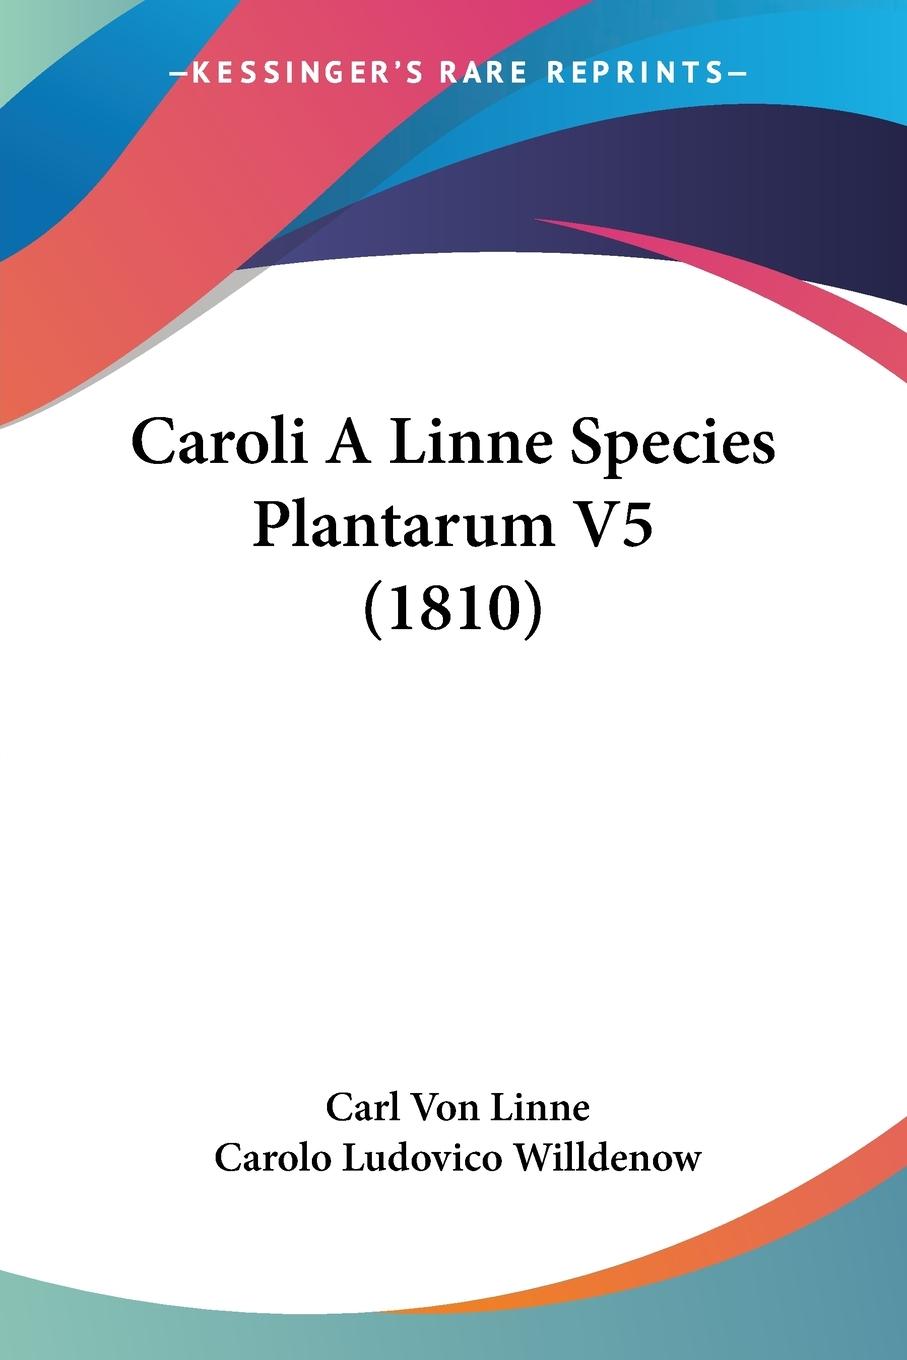 Caroli A Linne Species Plantarum V5 (1810) / Carl Von Linne / Taschenbuch / Paperback / Englisch / 2009 / Kessinger Publishing, LLC / EAN 9781104078041 - Linne, Carl Von